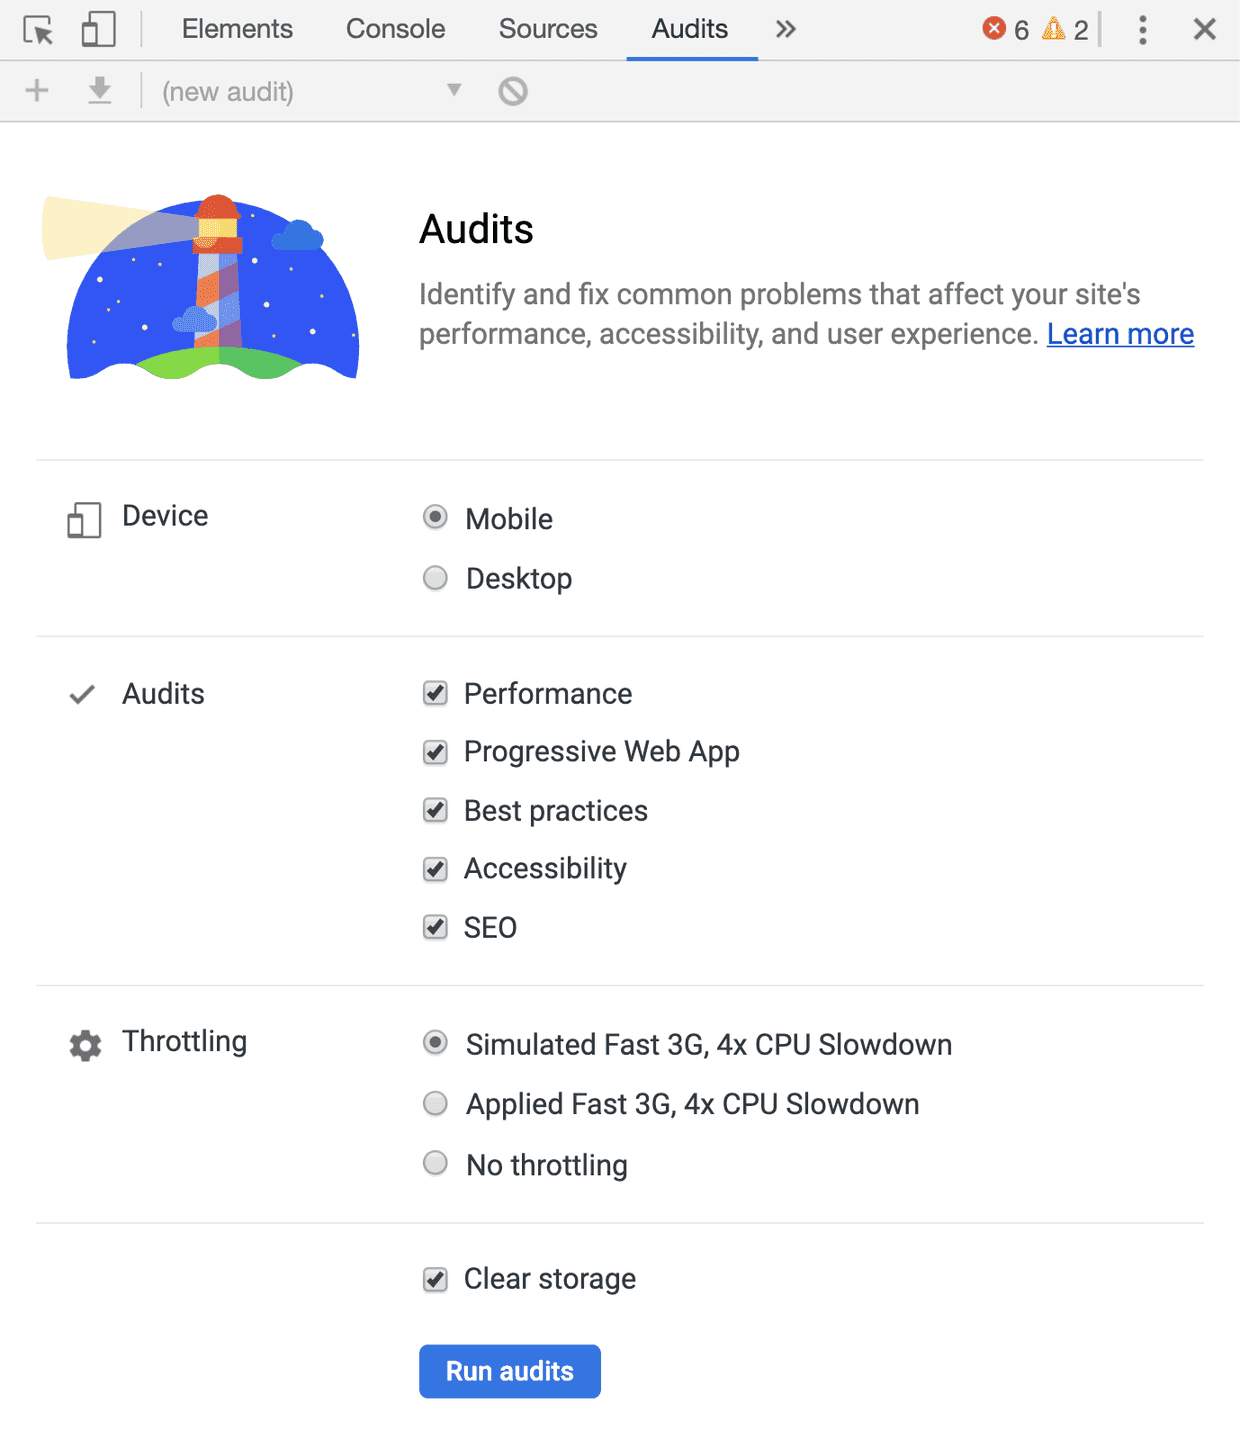 Detalle del panel Audit en las herramientas de desarrollador de Google Chrome